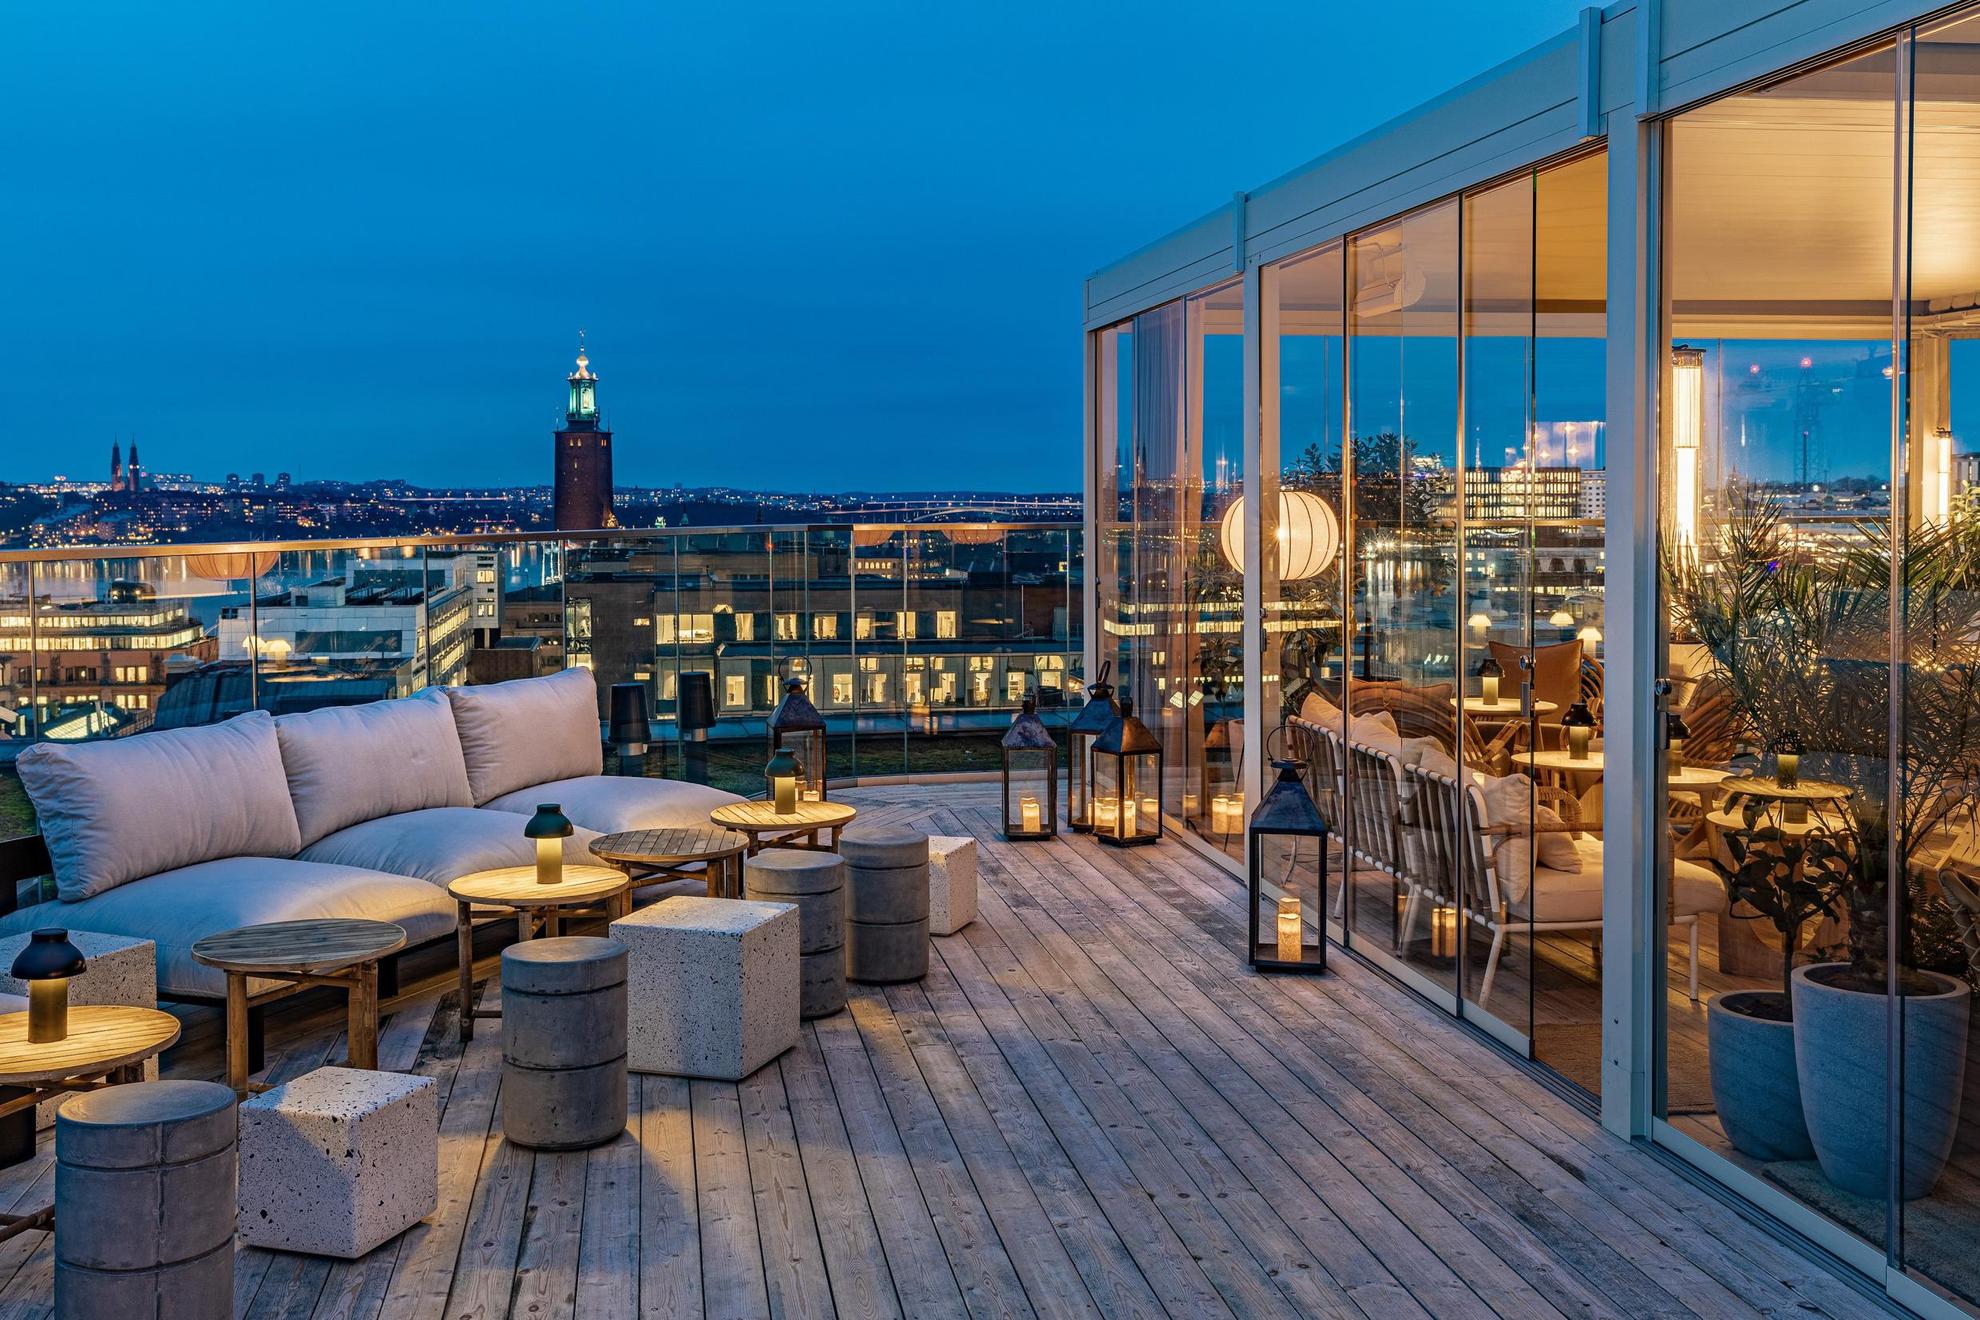 Die japanische Terrasse bei TAK über den Dächern Stockholms am Abend.